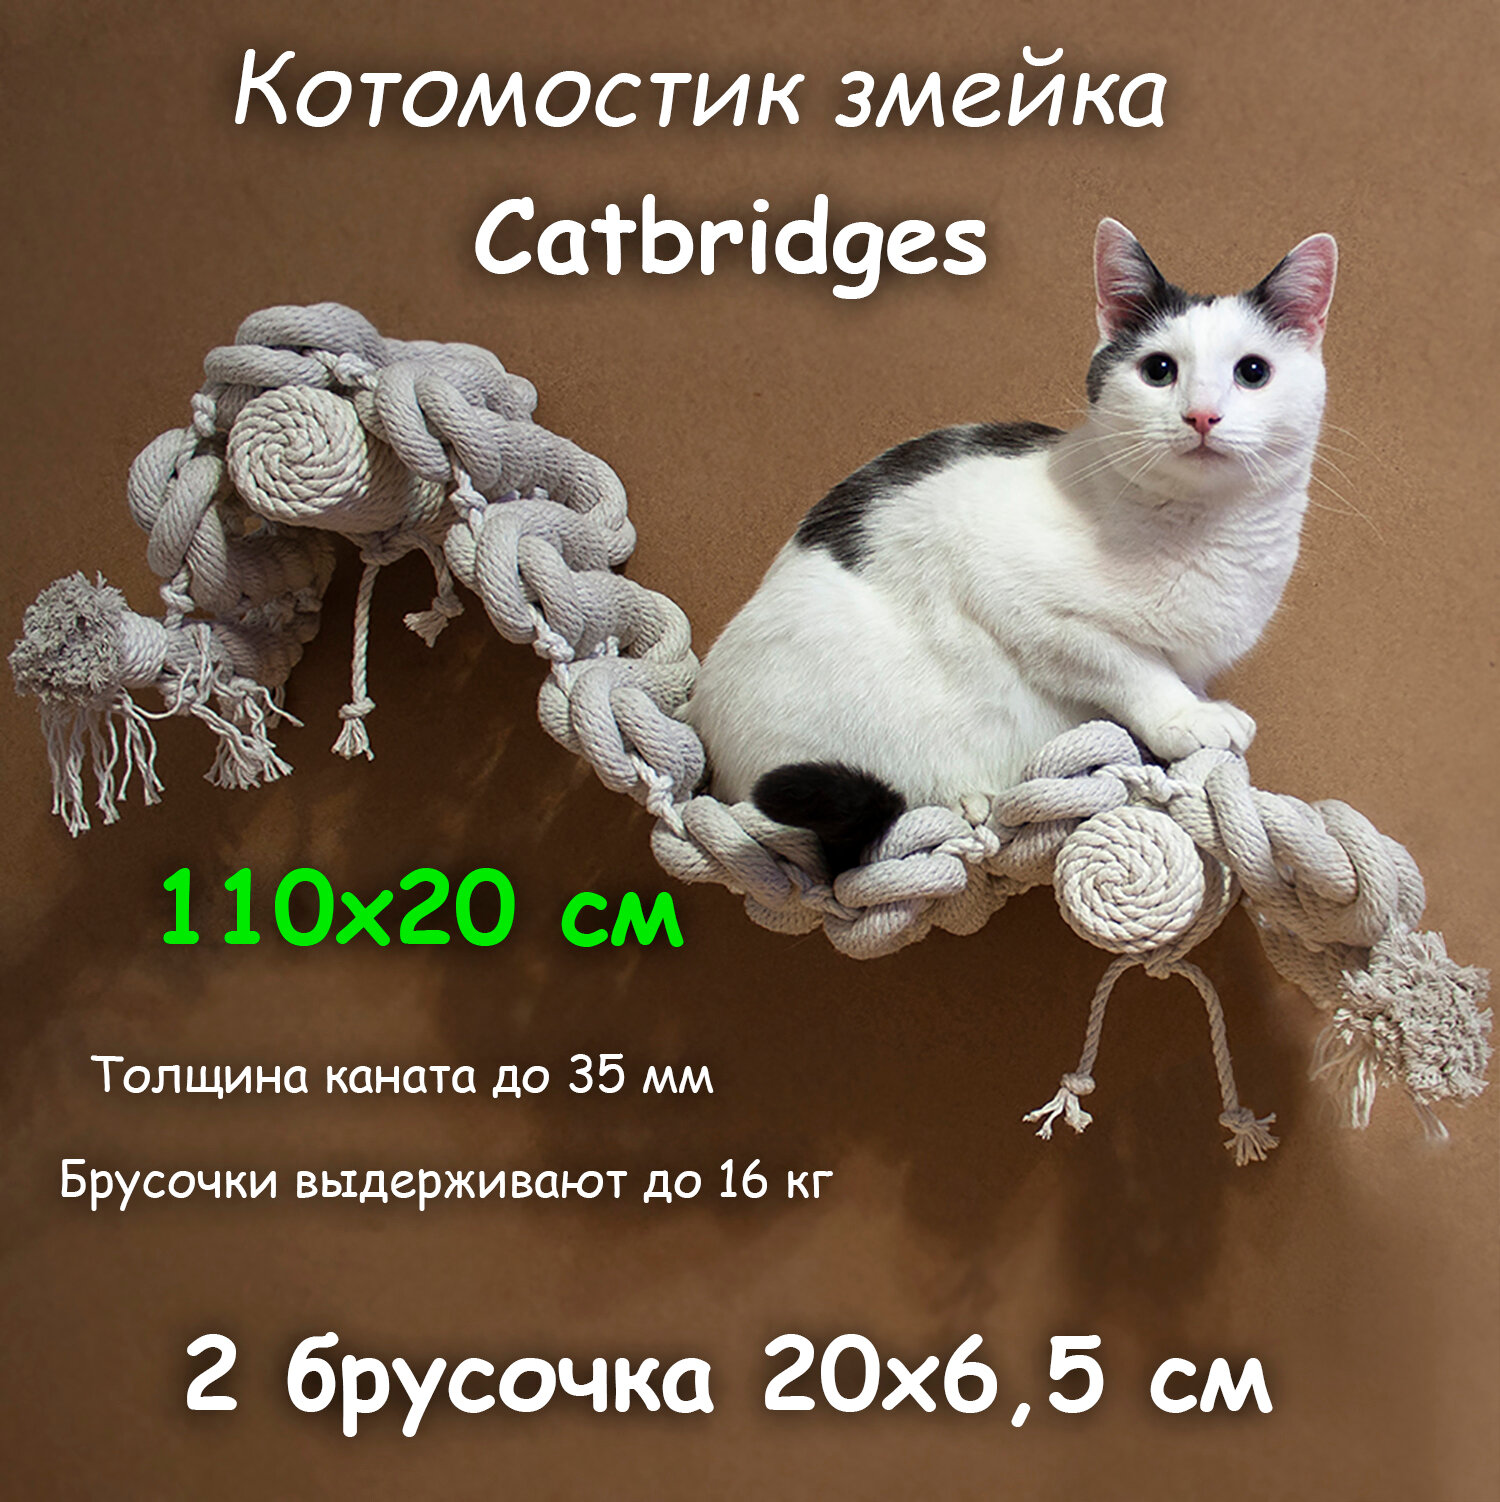 Когтеточка для кошки из хлопка . 110х20 см, 2 брусочка . канат 32 мм, шпилька 8 мм . Котомостик Змейка от Catbridges . Белый . Лежанка .